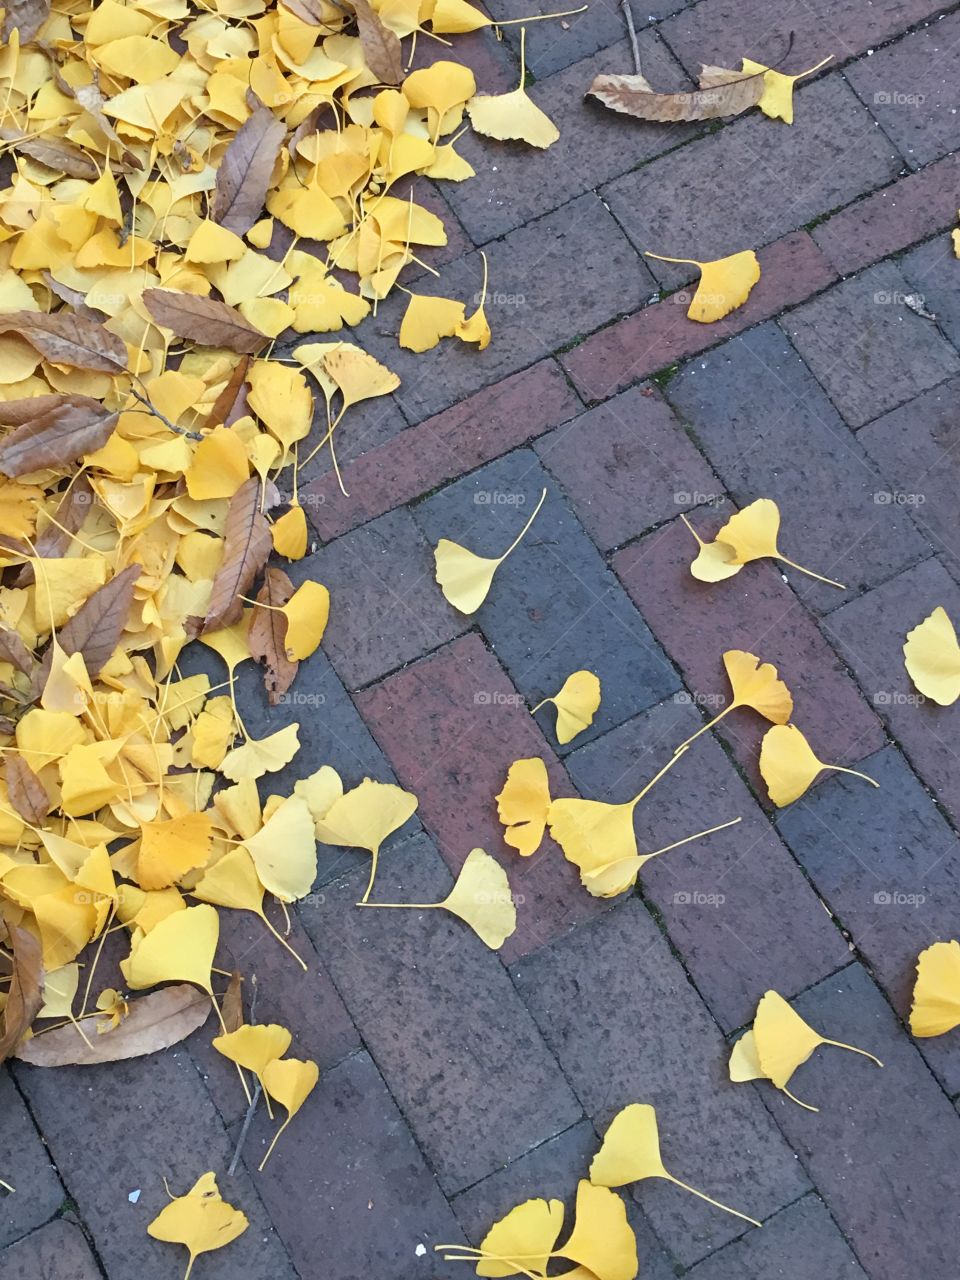 Fallen leaves on brick.